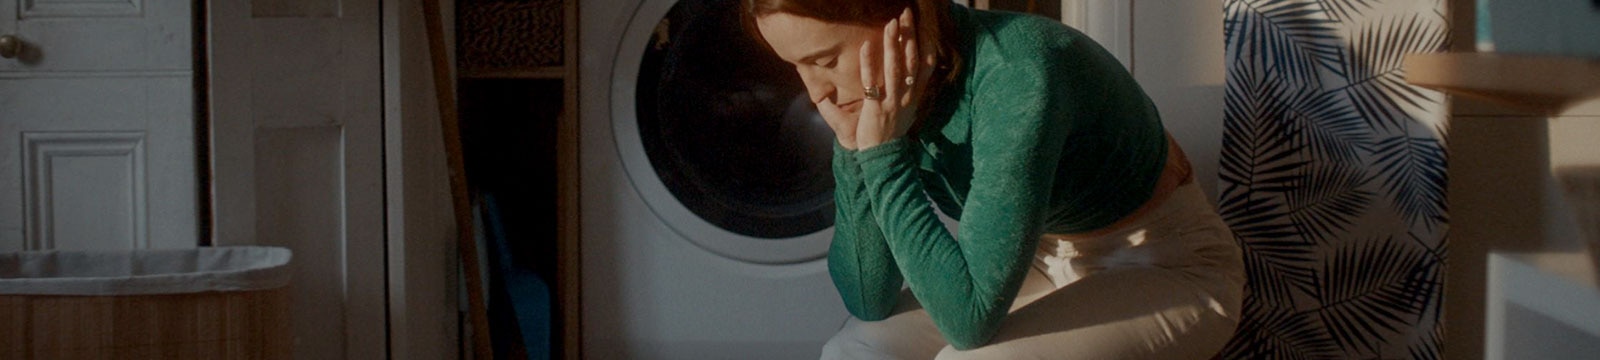 Wyczerpana kobieta siedzi samotnie w pralni.